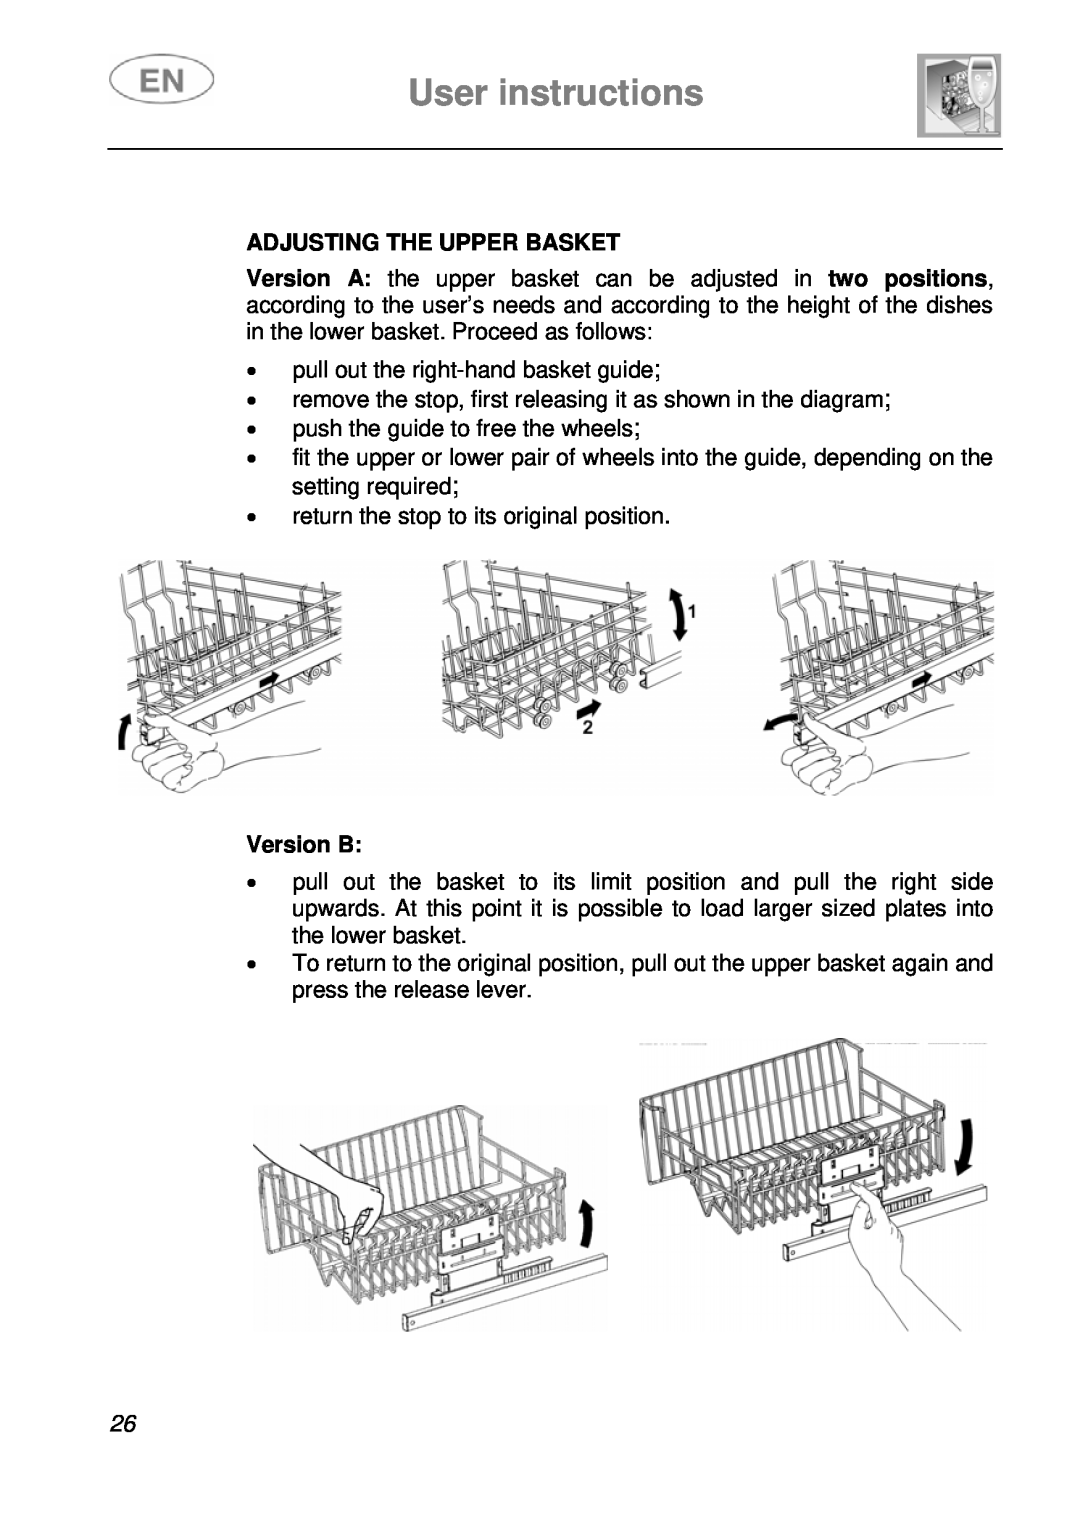 Smeg ST115S instruction manual User instructions, Adjusting The Upper Basket, Version B 